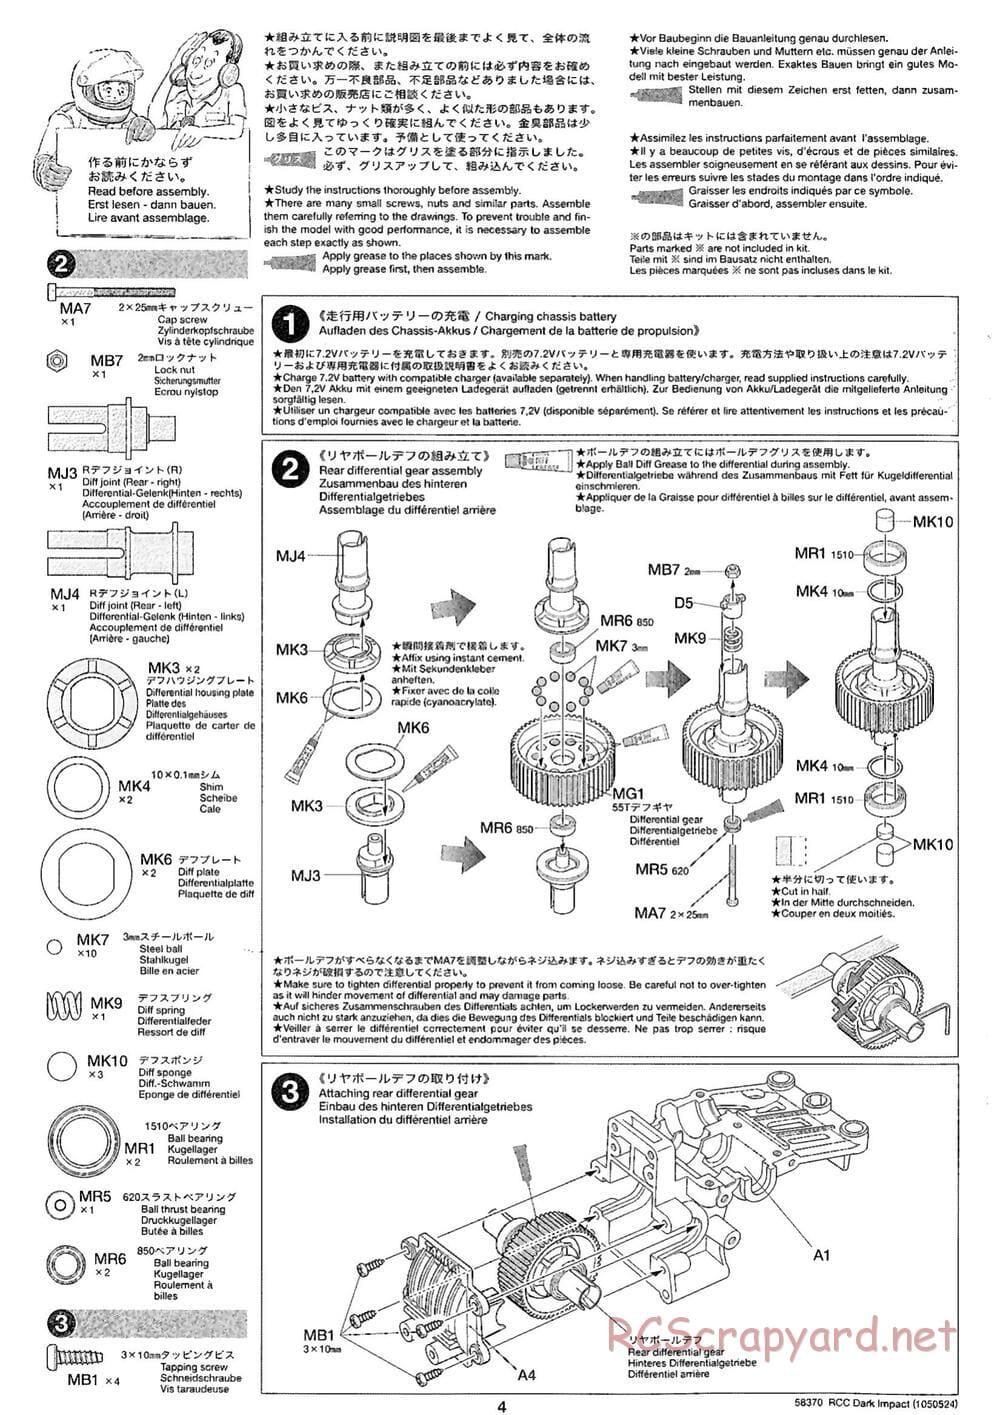 Tamiya - Dark Impact Chassis - Manual - Page 4